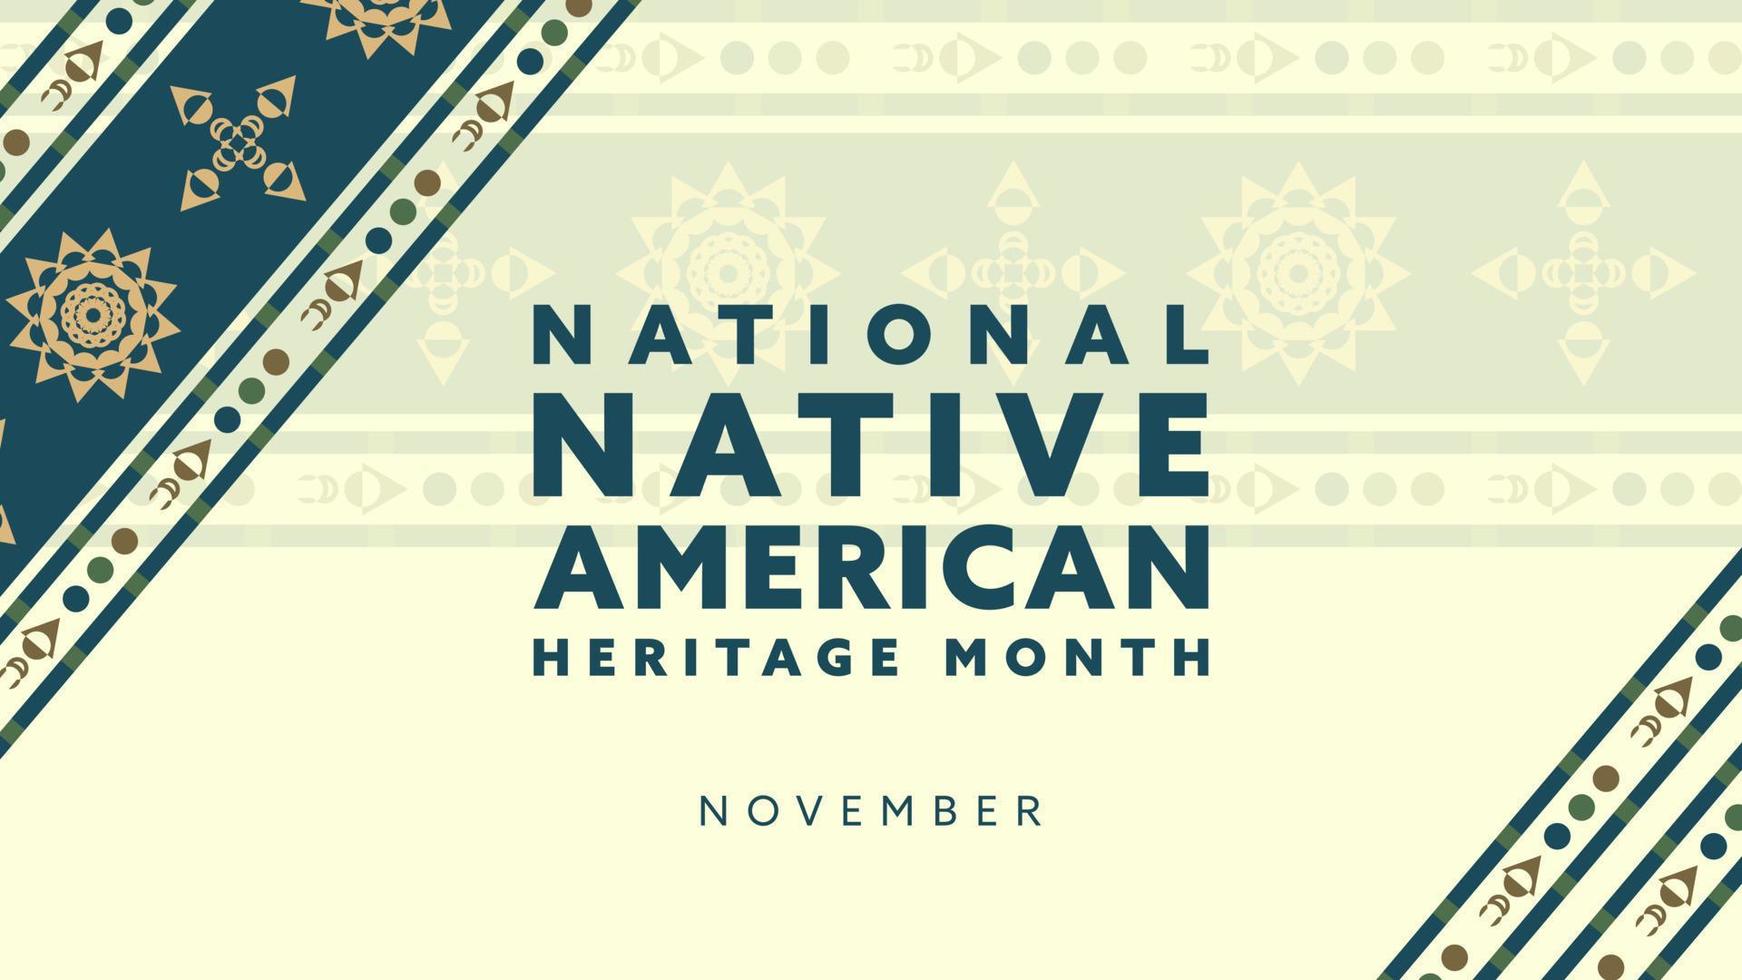 mes de la herencia nativa americana. diseño de fondo con adornos abstractos que celebran a los indios nativos en América. vector